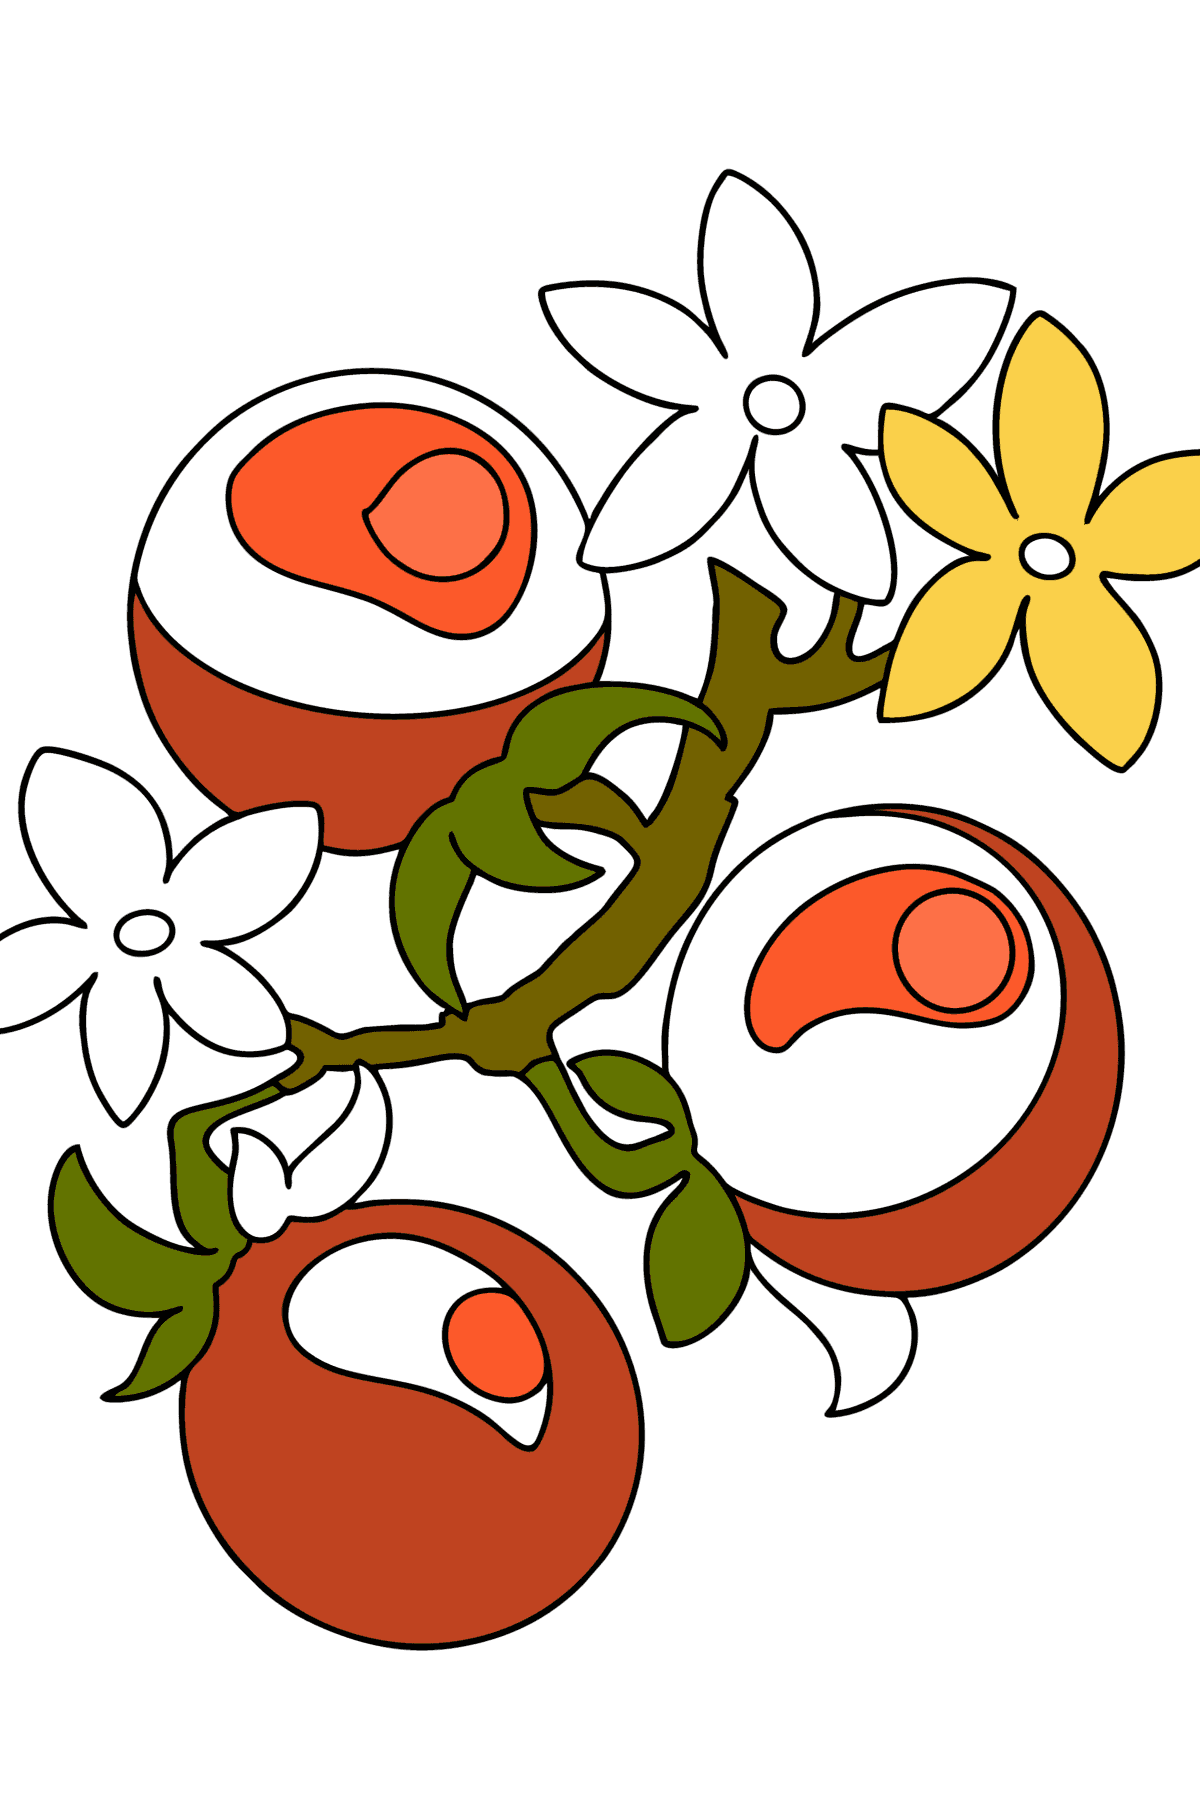 Boyama sayfası Daldaki domatesler - Boyamalar çocuklar için